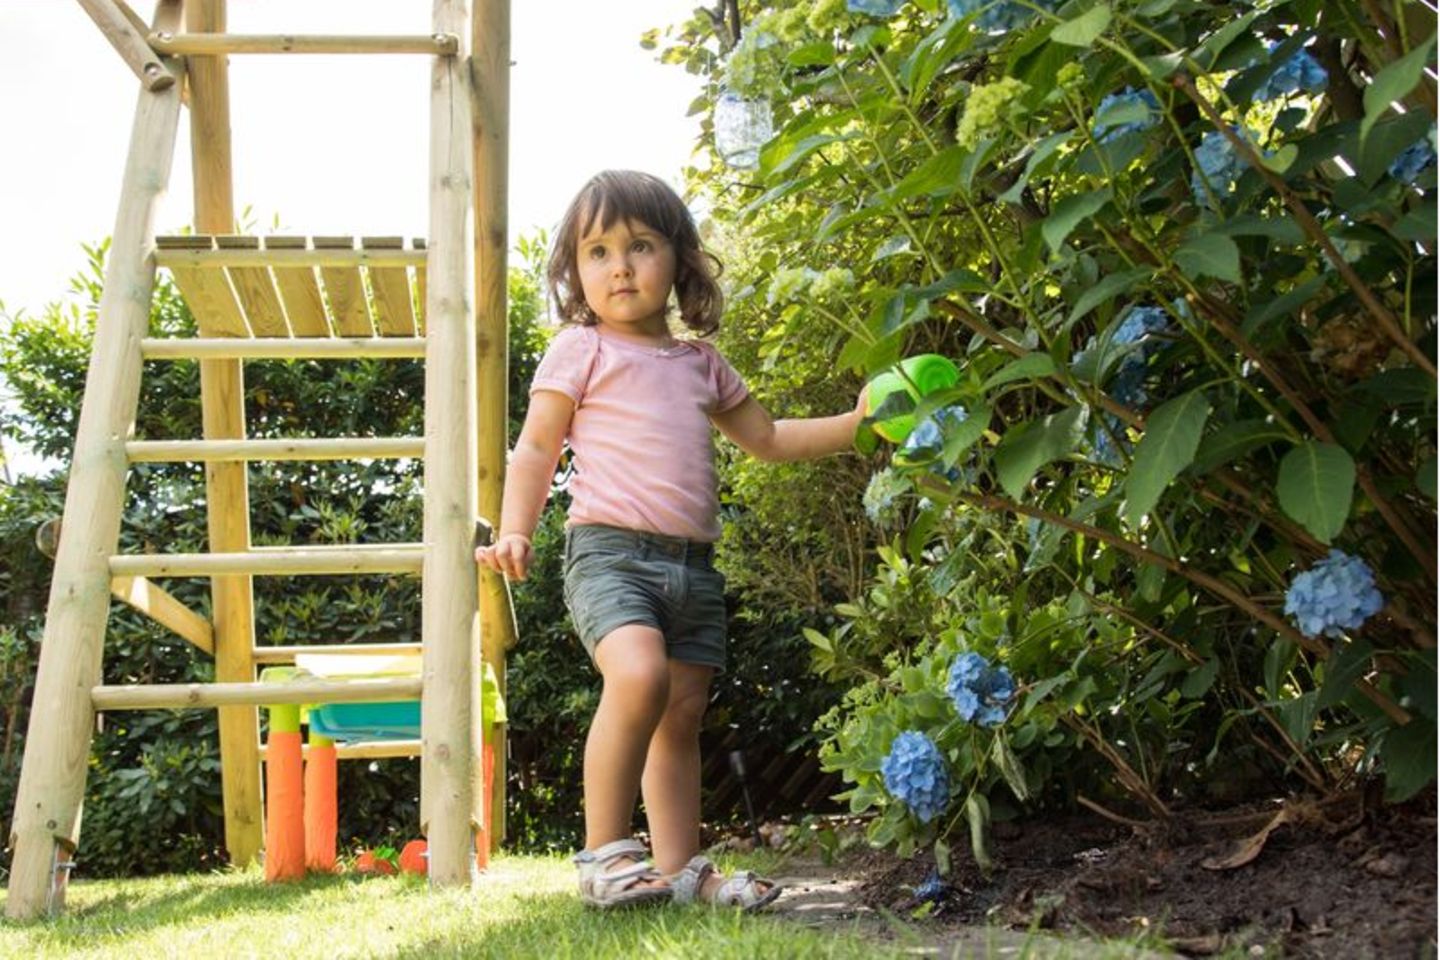 Kleines Mädchen in einem Garten mit Hortensien und Klettergerüst